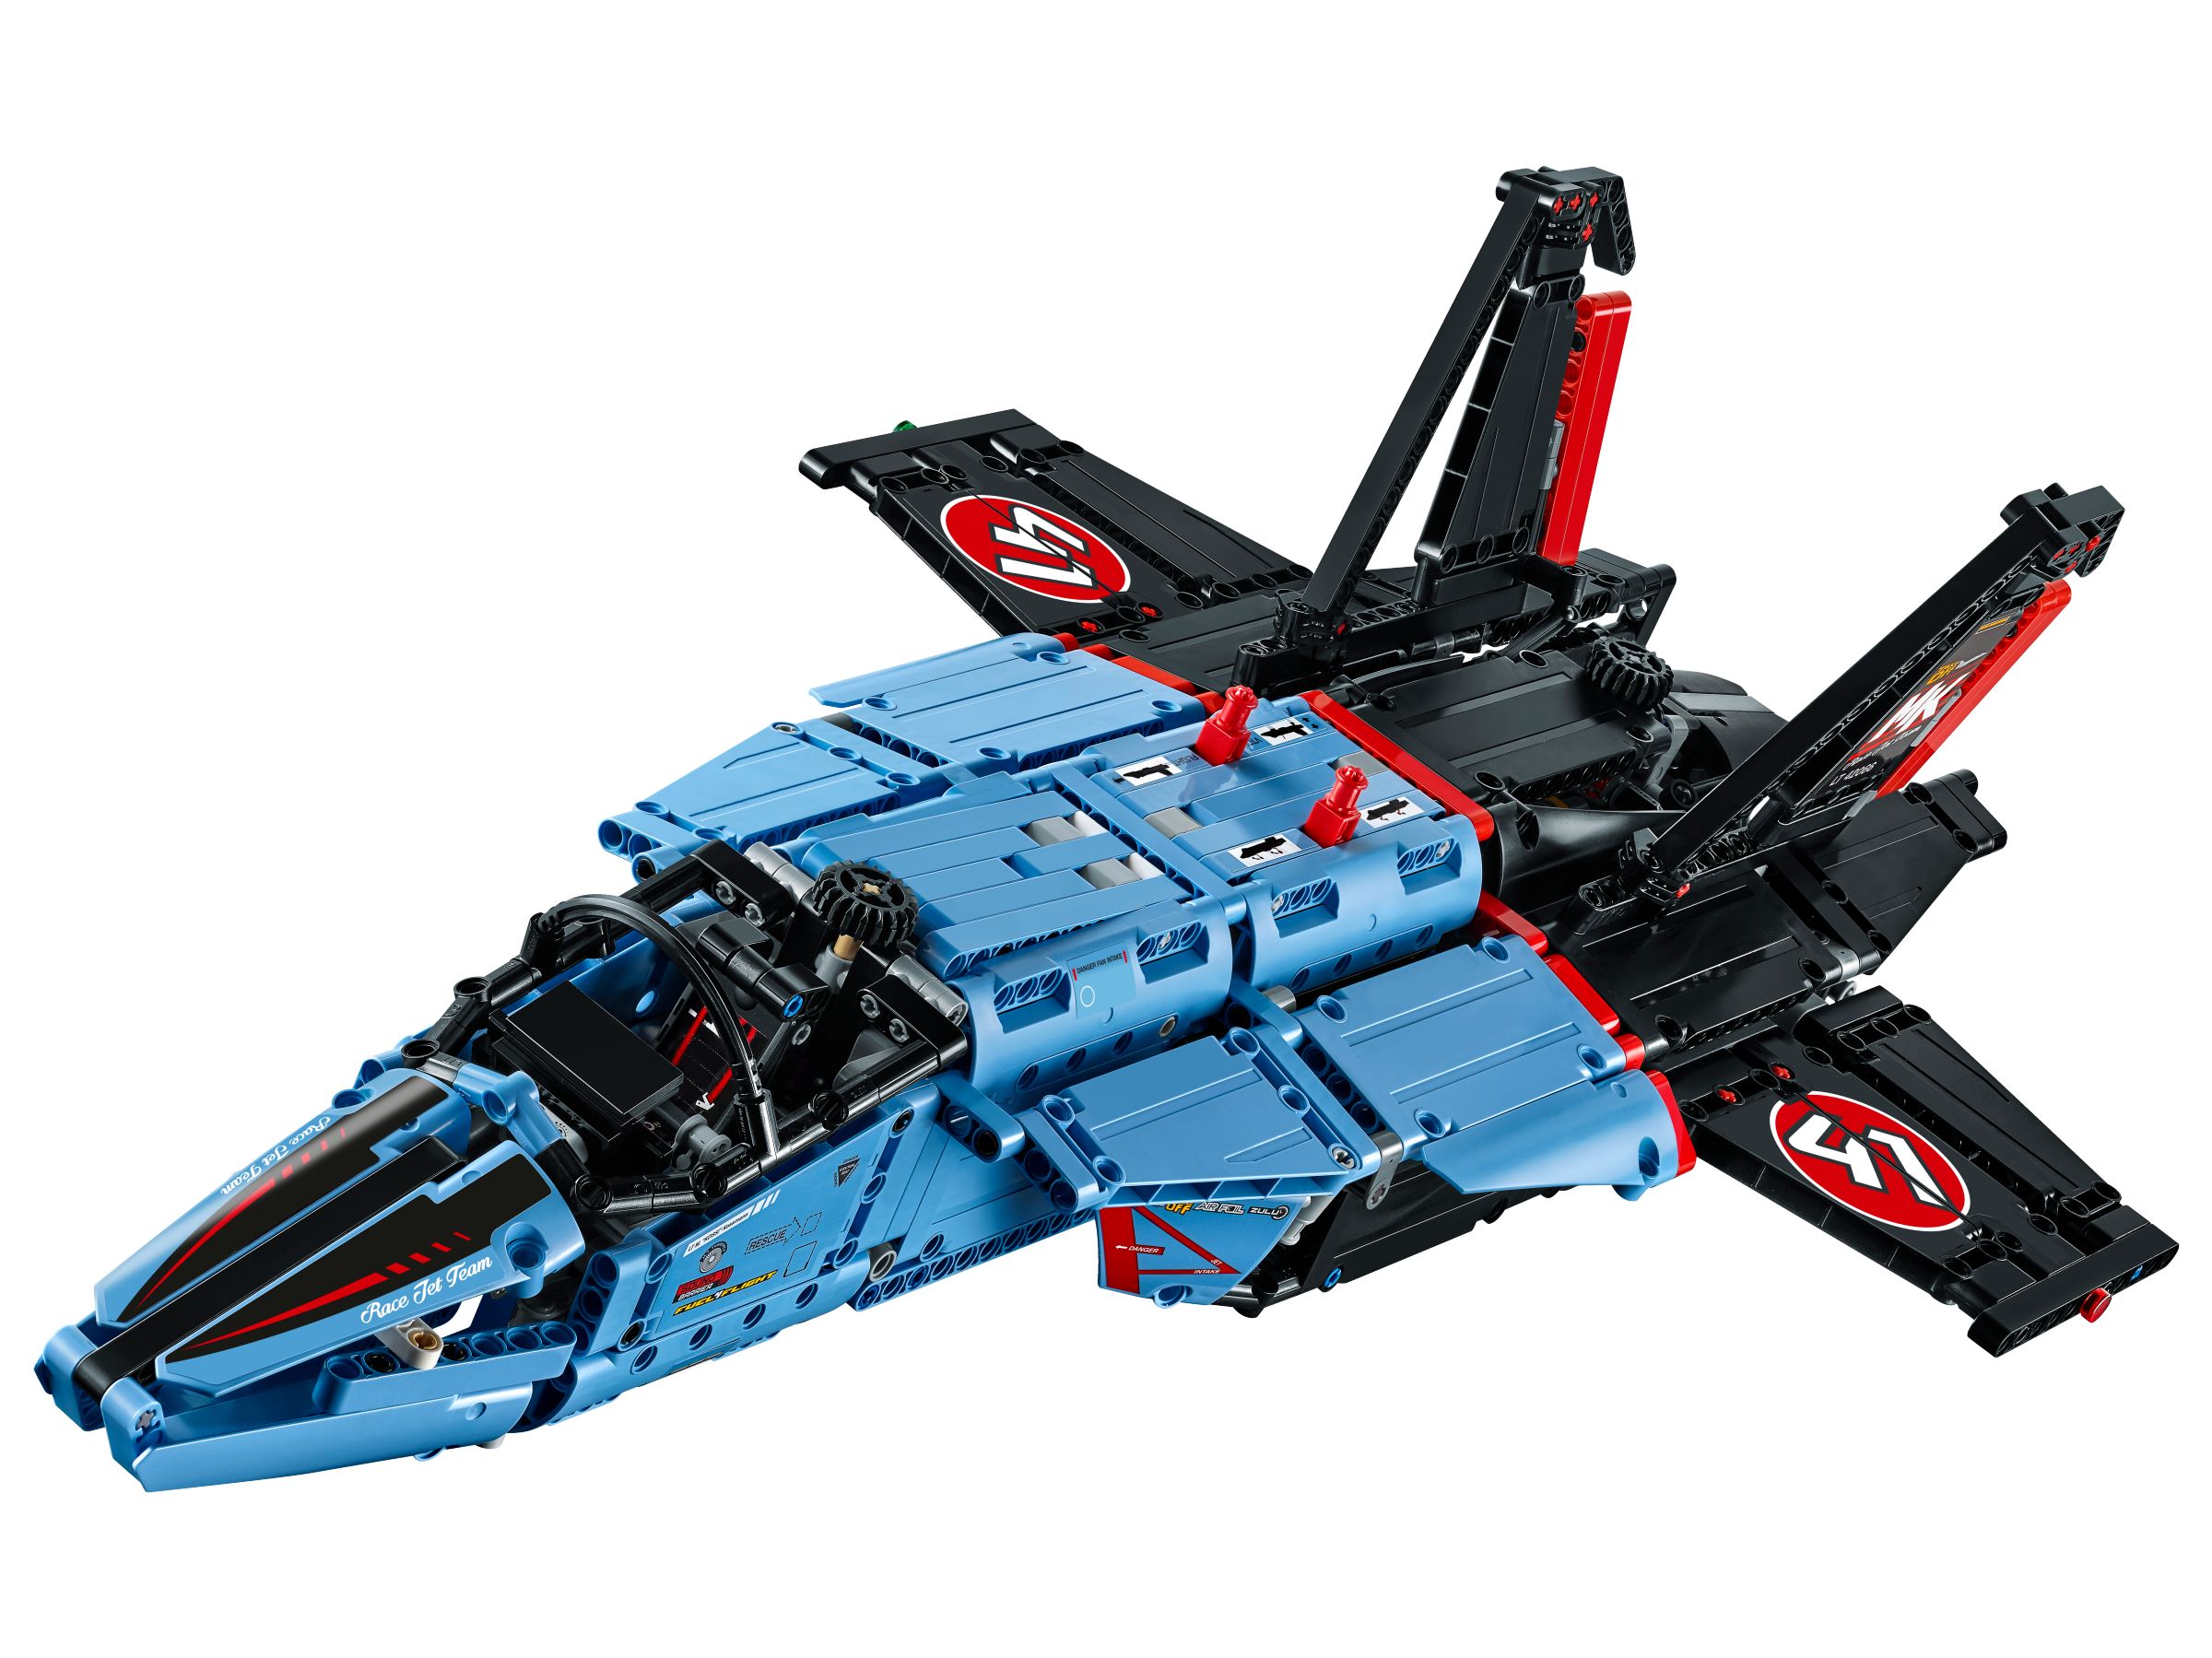 LEGO Technic 42066 Air Race Jet LEGO_42066_alt2.jpg